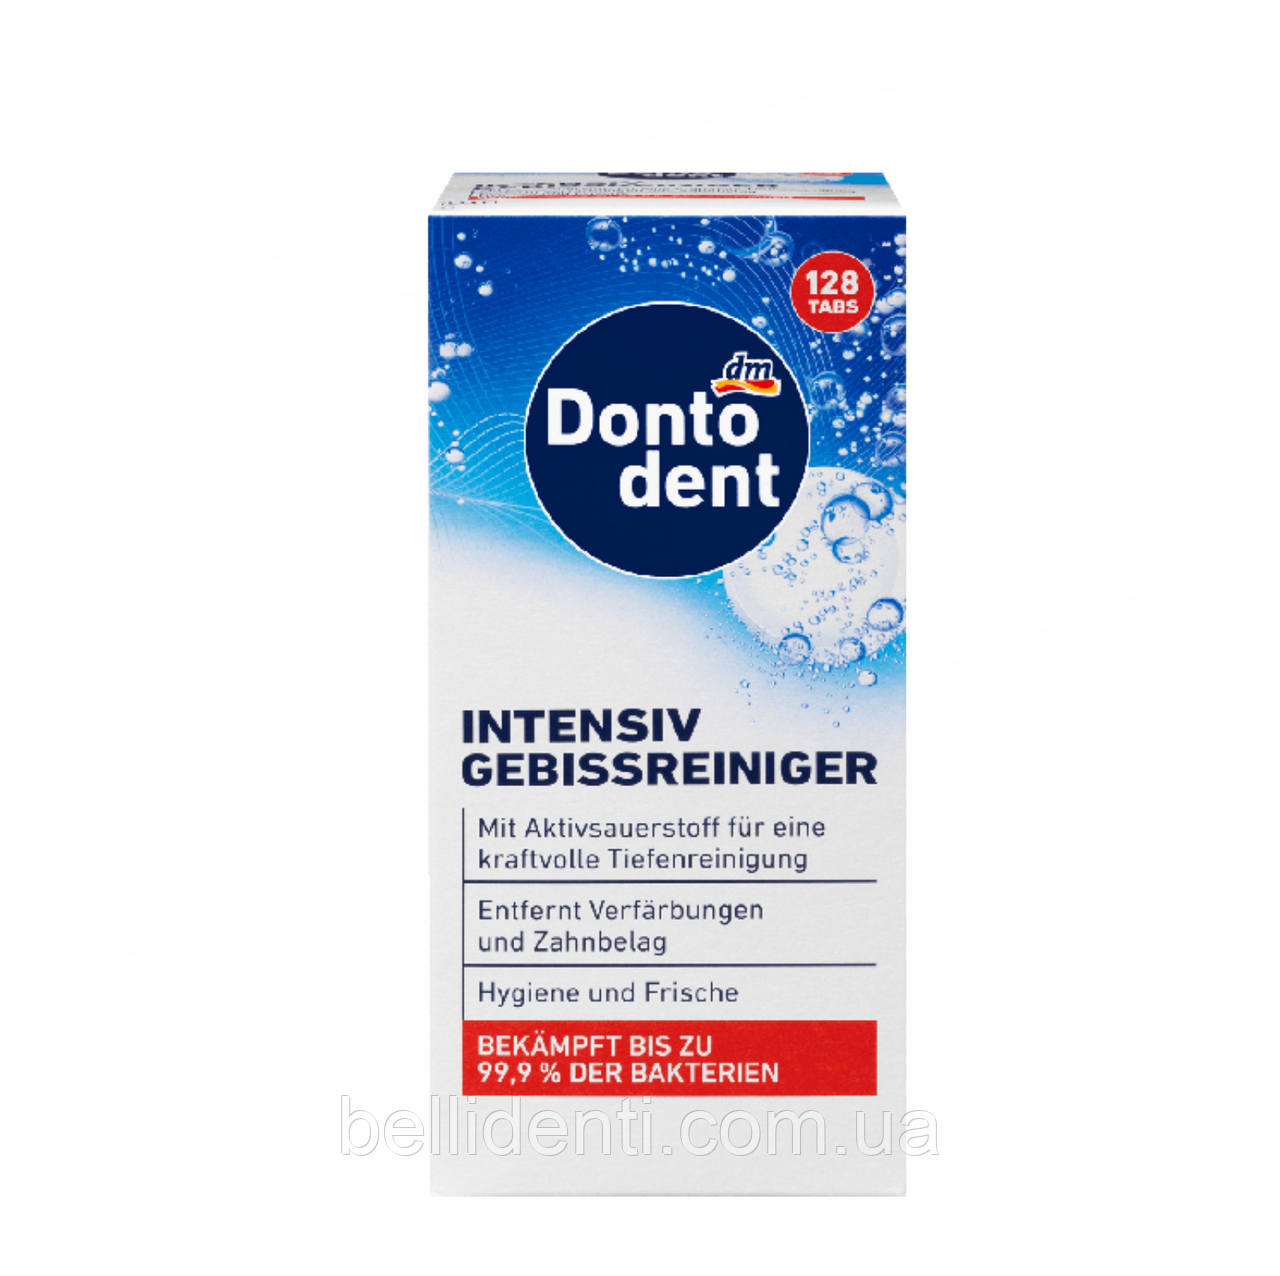 Шипучі таблетки для чищення зубних протезів Dontodent intensiv-Gebissreiniger 128 шт